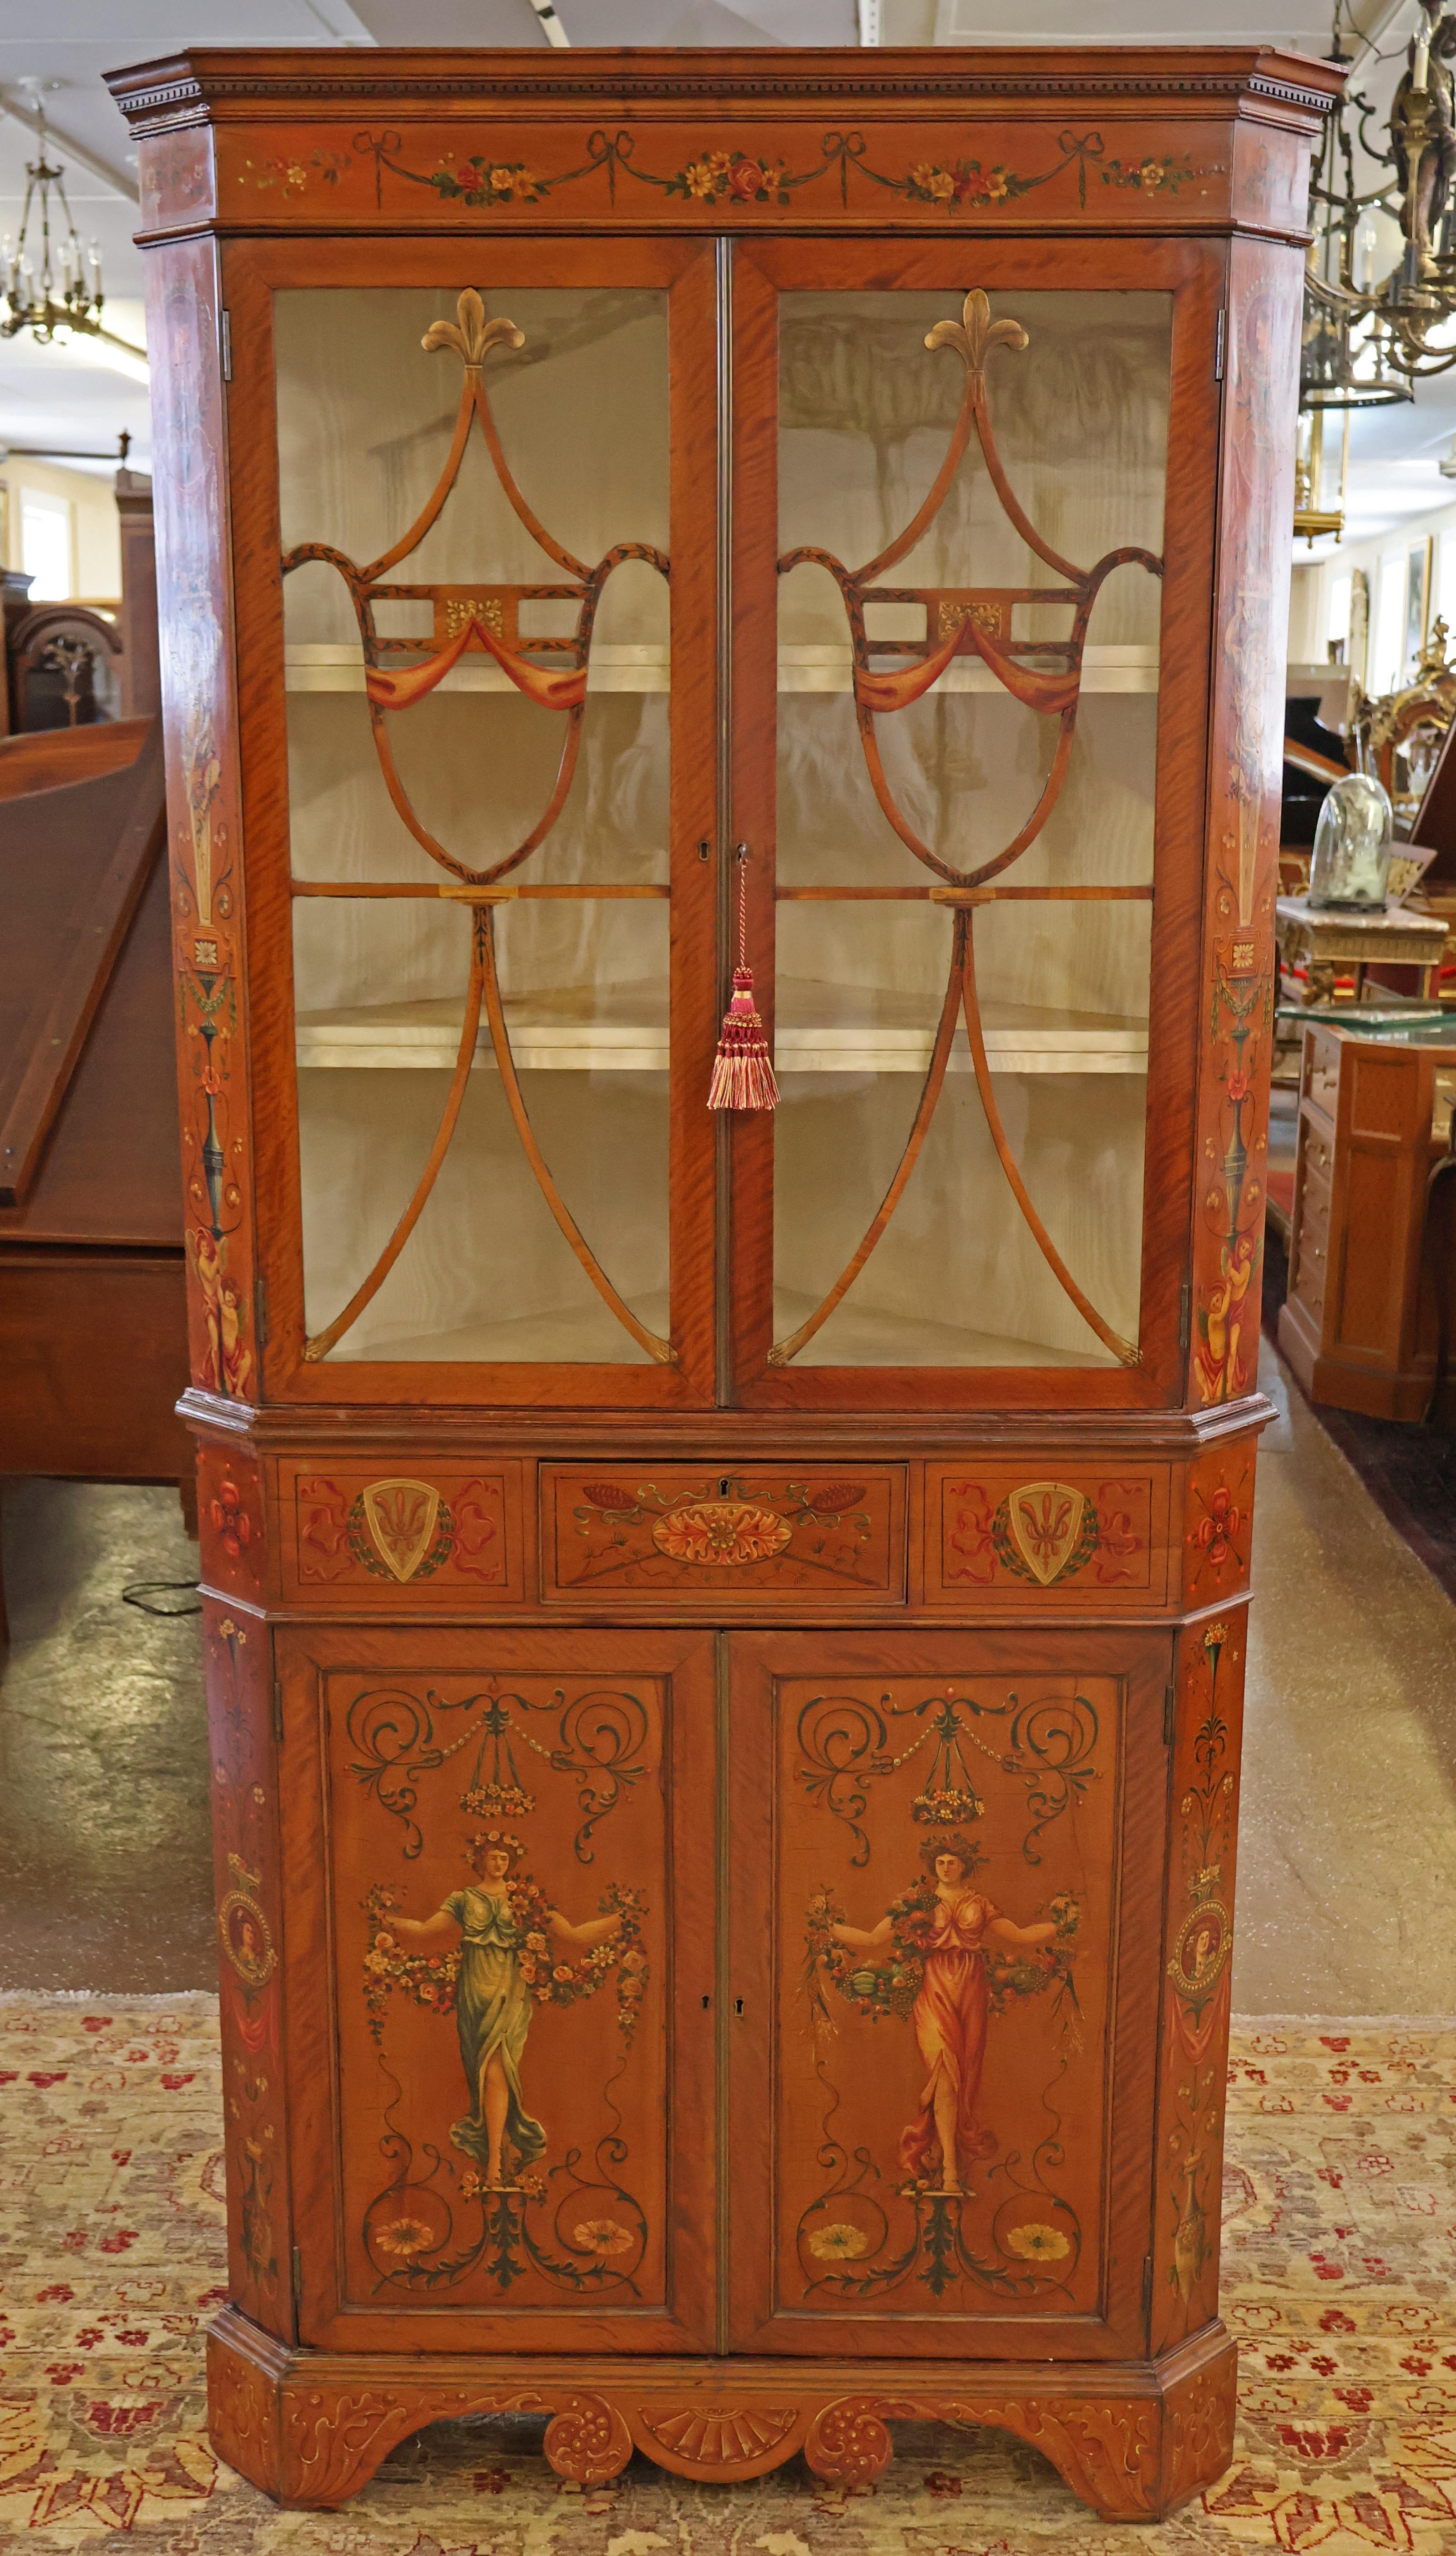 Superbe vitrine d'angle en bois satiné peint de style Adams du 19e siècle pour la présentation de la porcelaine

Dimensions : 81